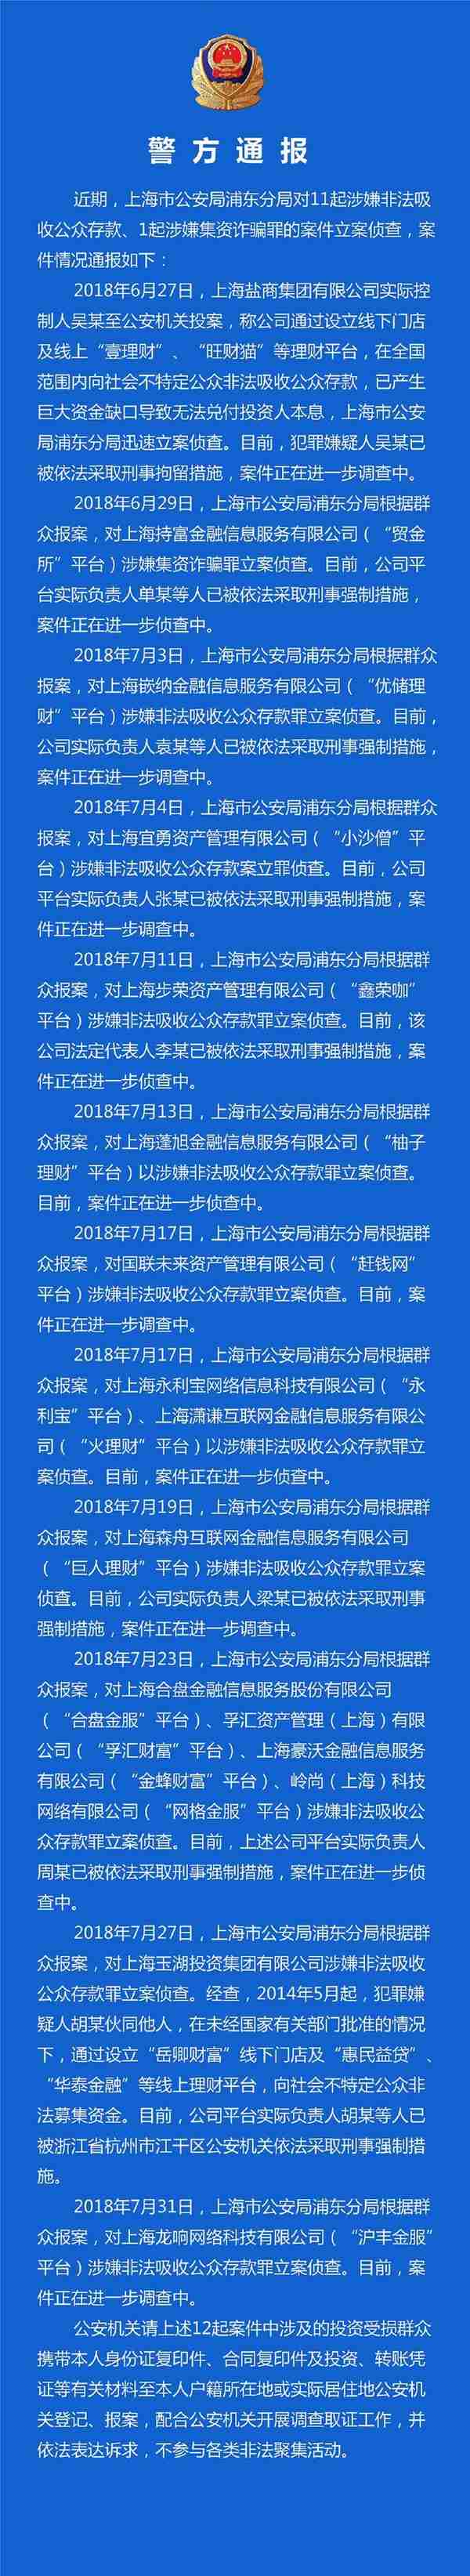 上海P2P平台案件通报情况汇总